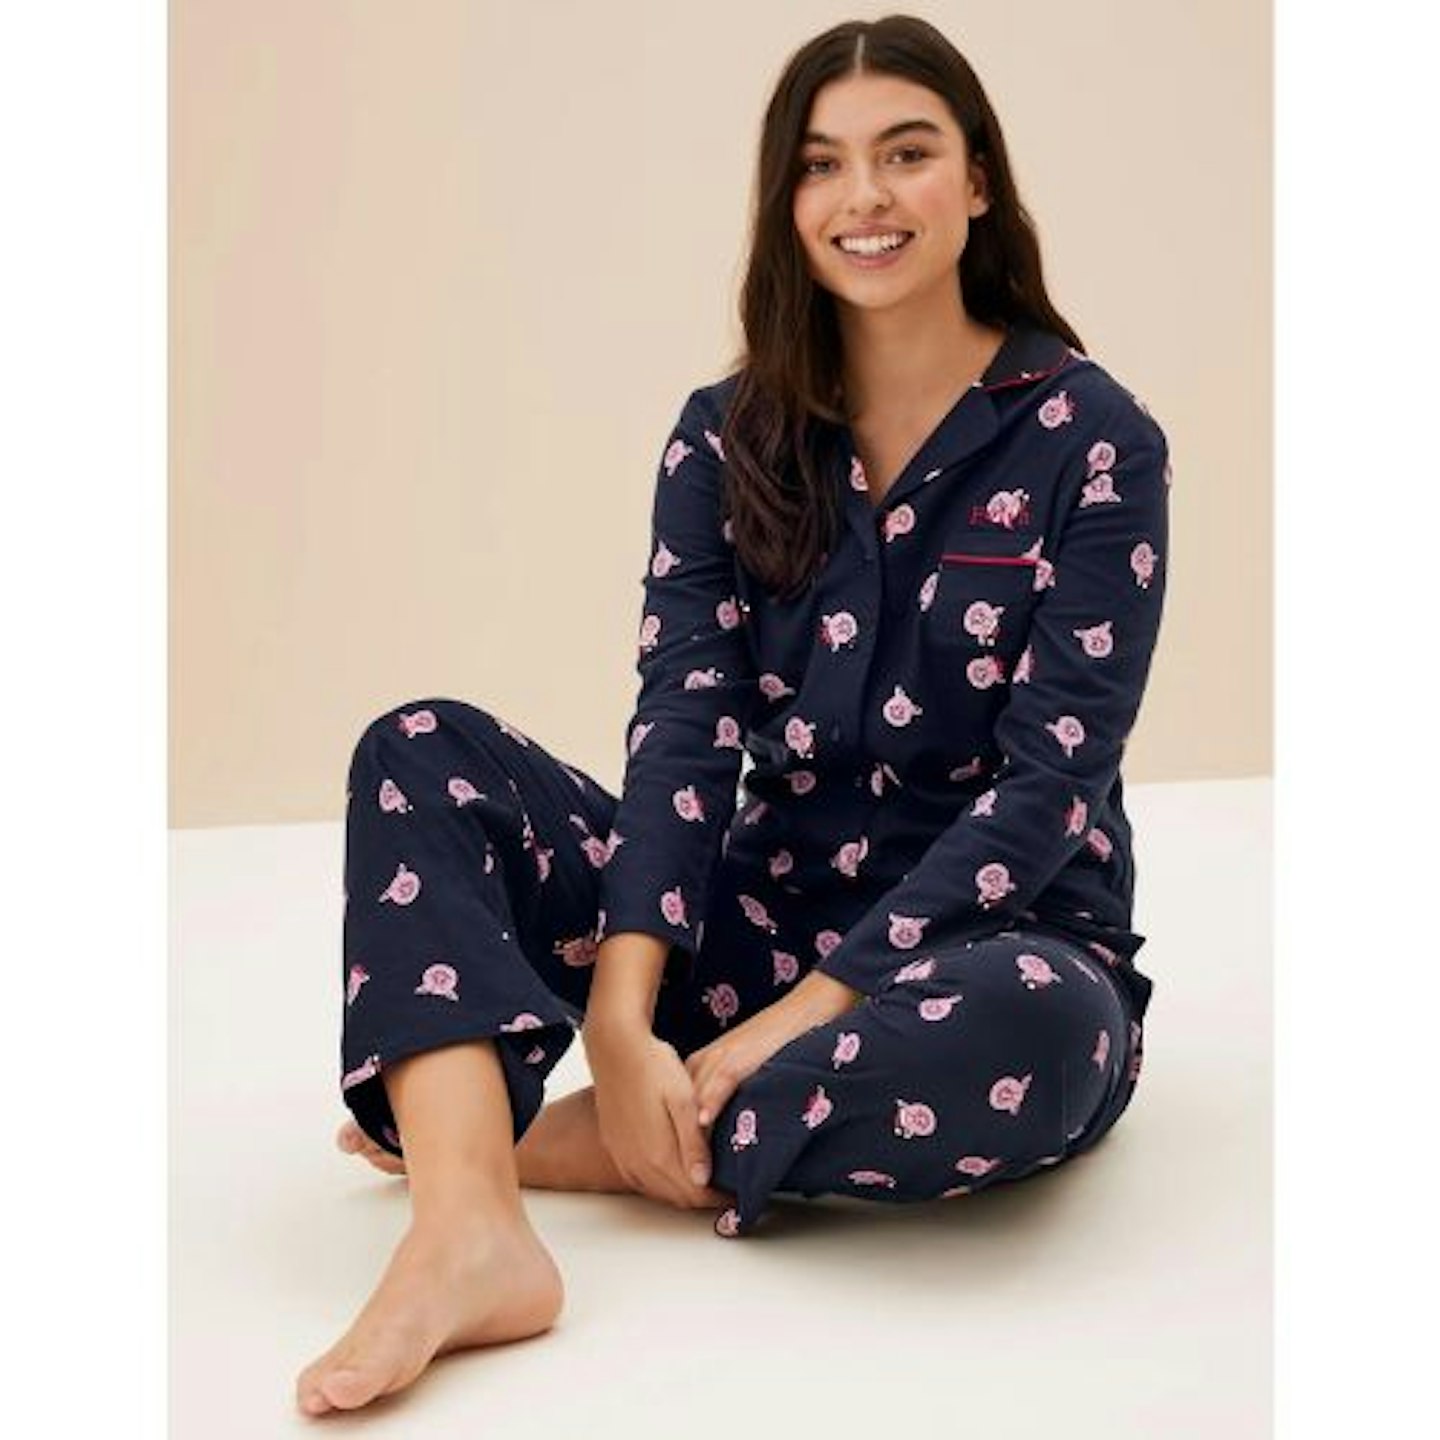 Family Christmas Pyjamas: Personalised Women's Percy Pig™ Pyjamas